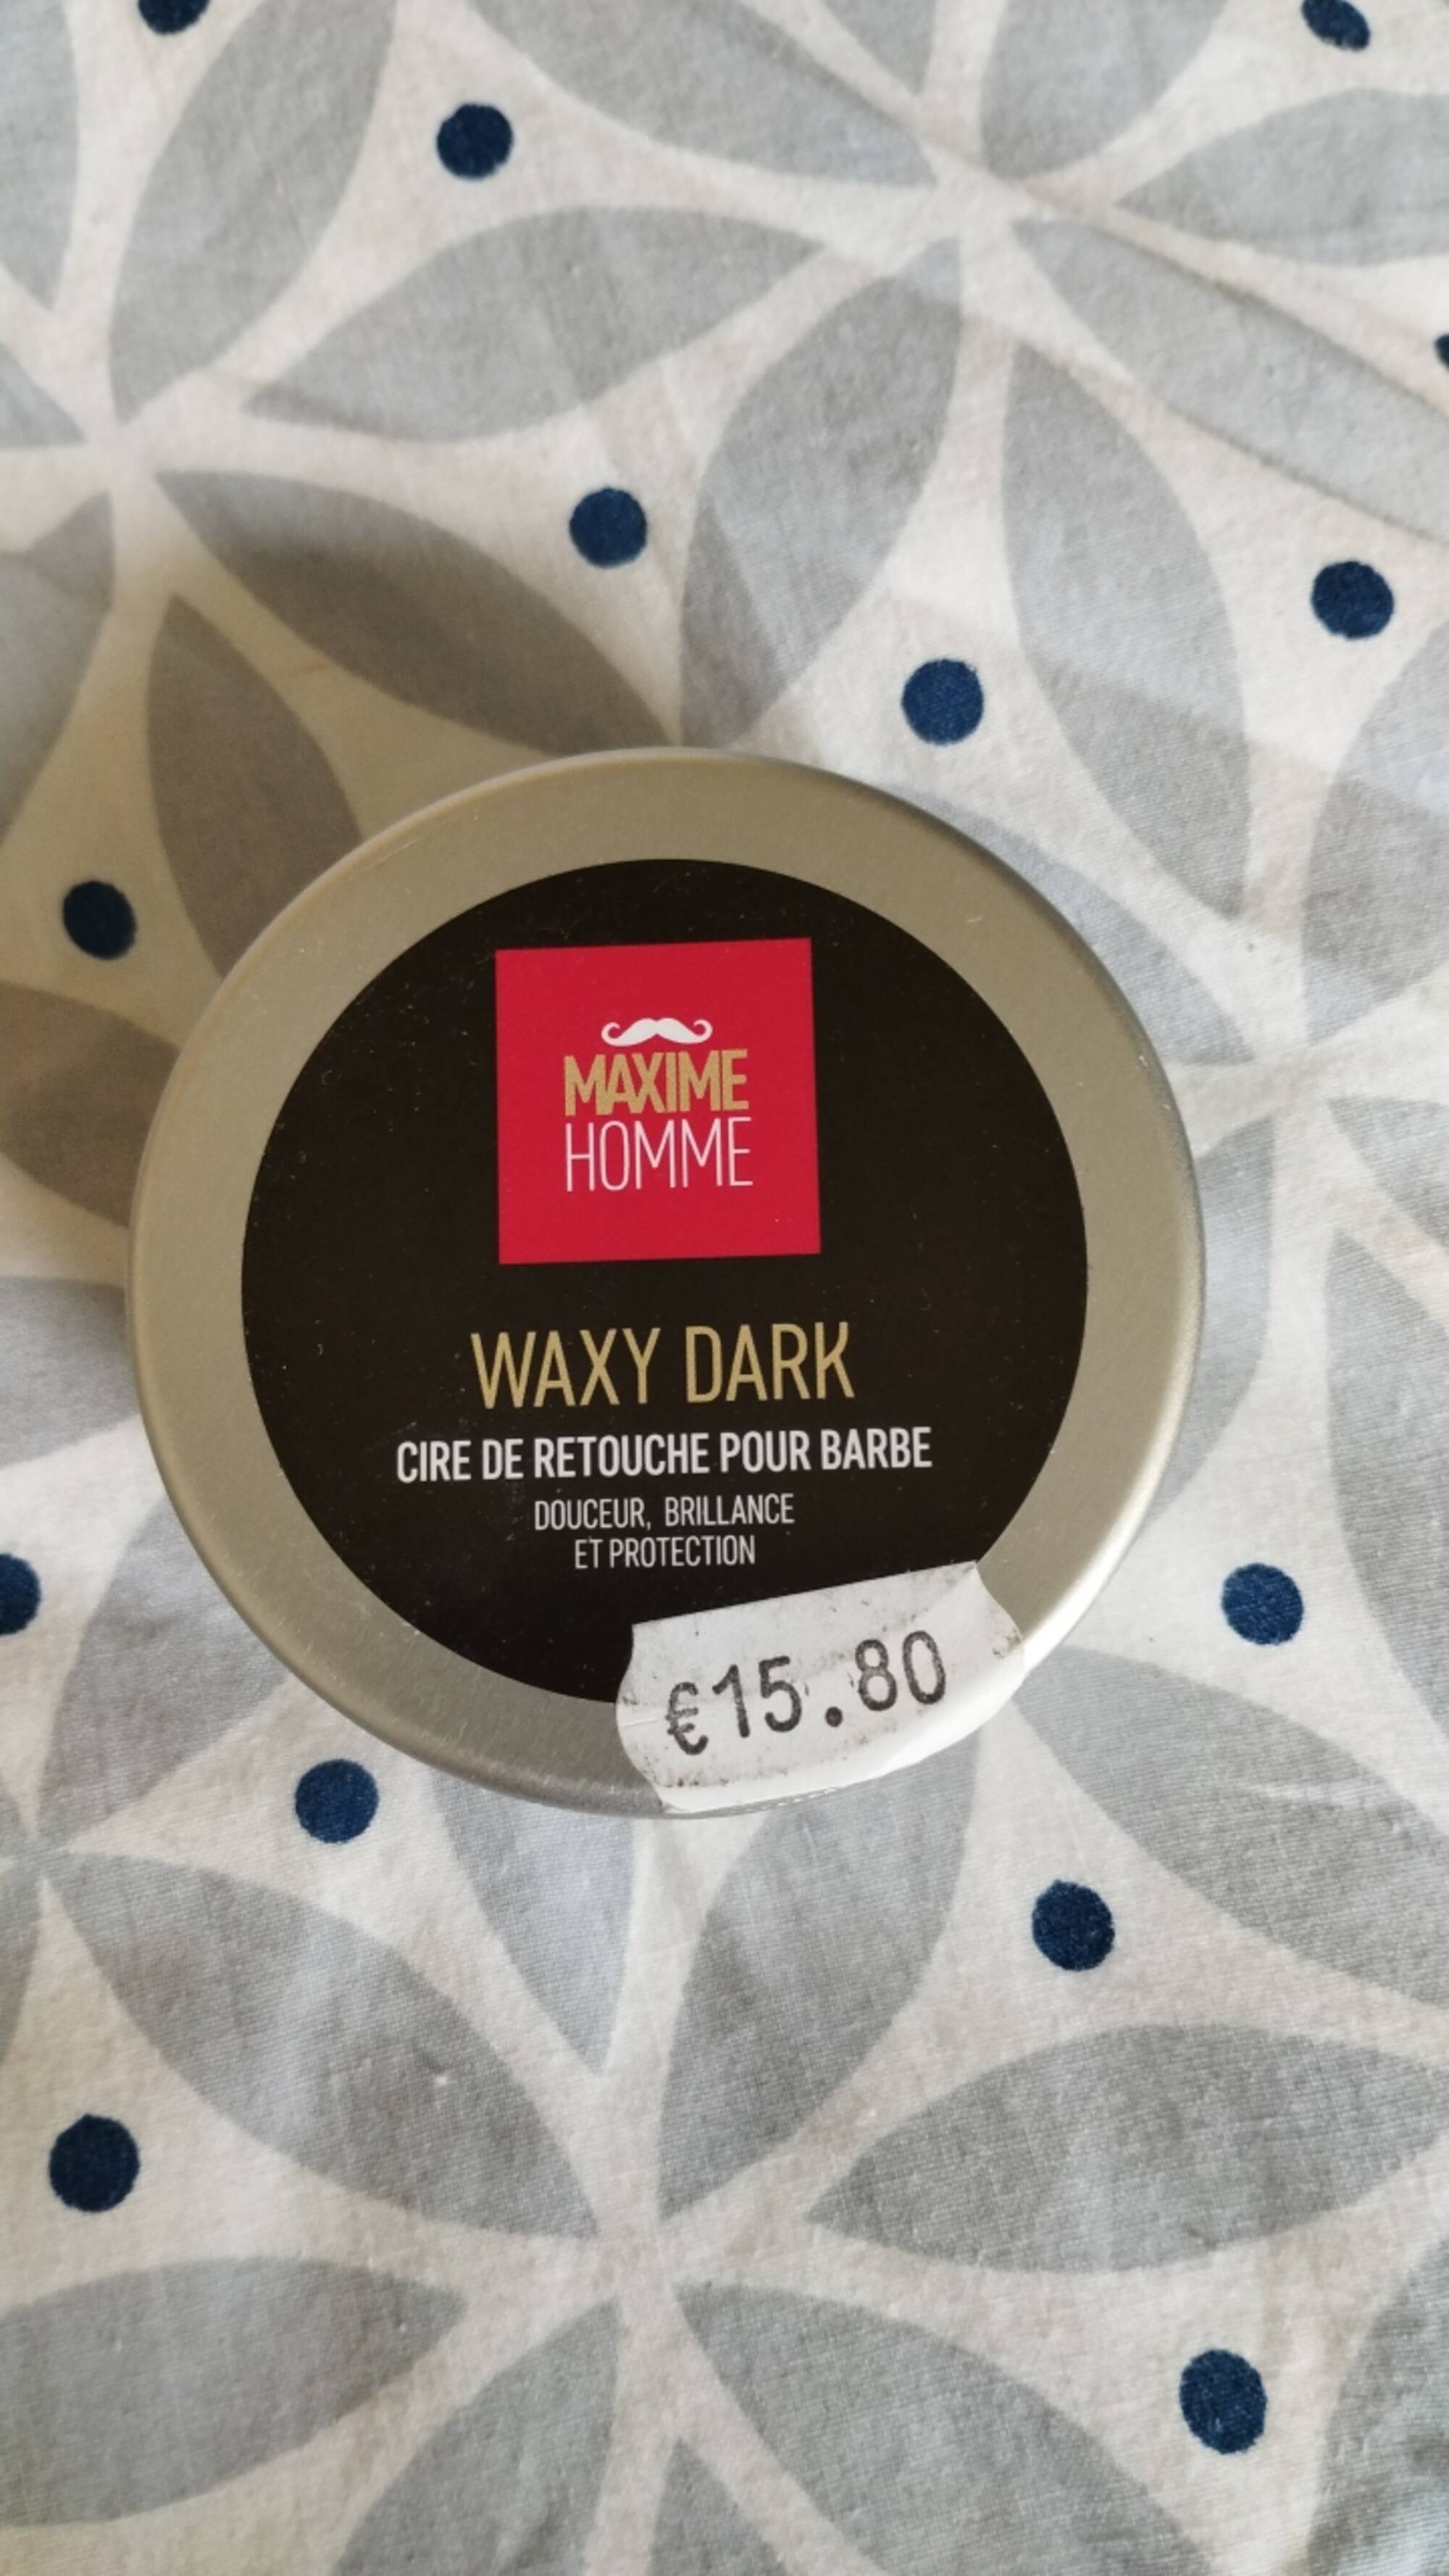 MAXIME HOMME - Waxy dark - Cire de retouche pour barbe